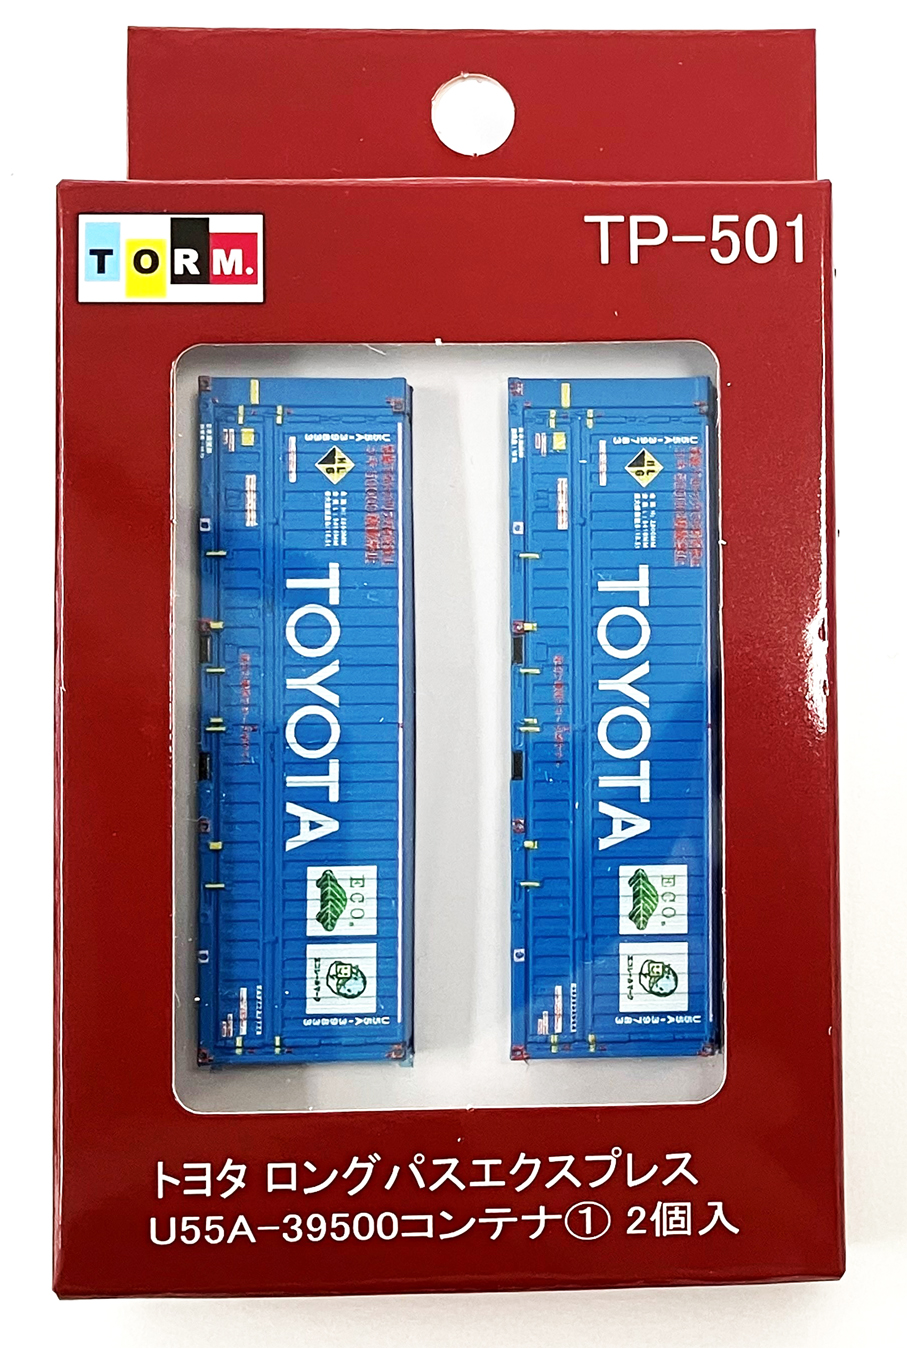 TORM. TP-501 トヨタ ロングパスエクスプレス U55A-39500コンテナ① 2 